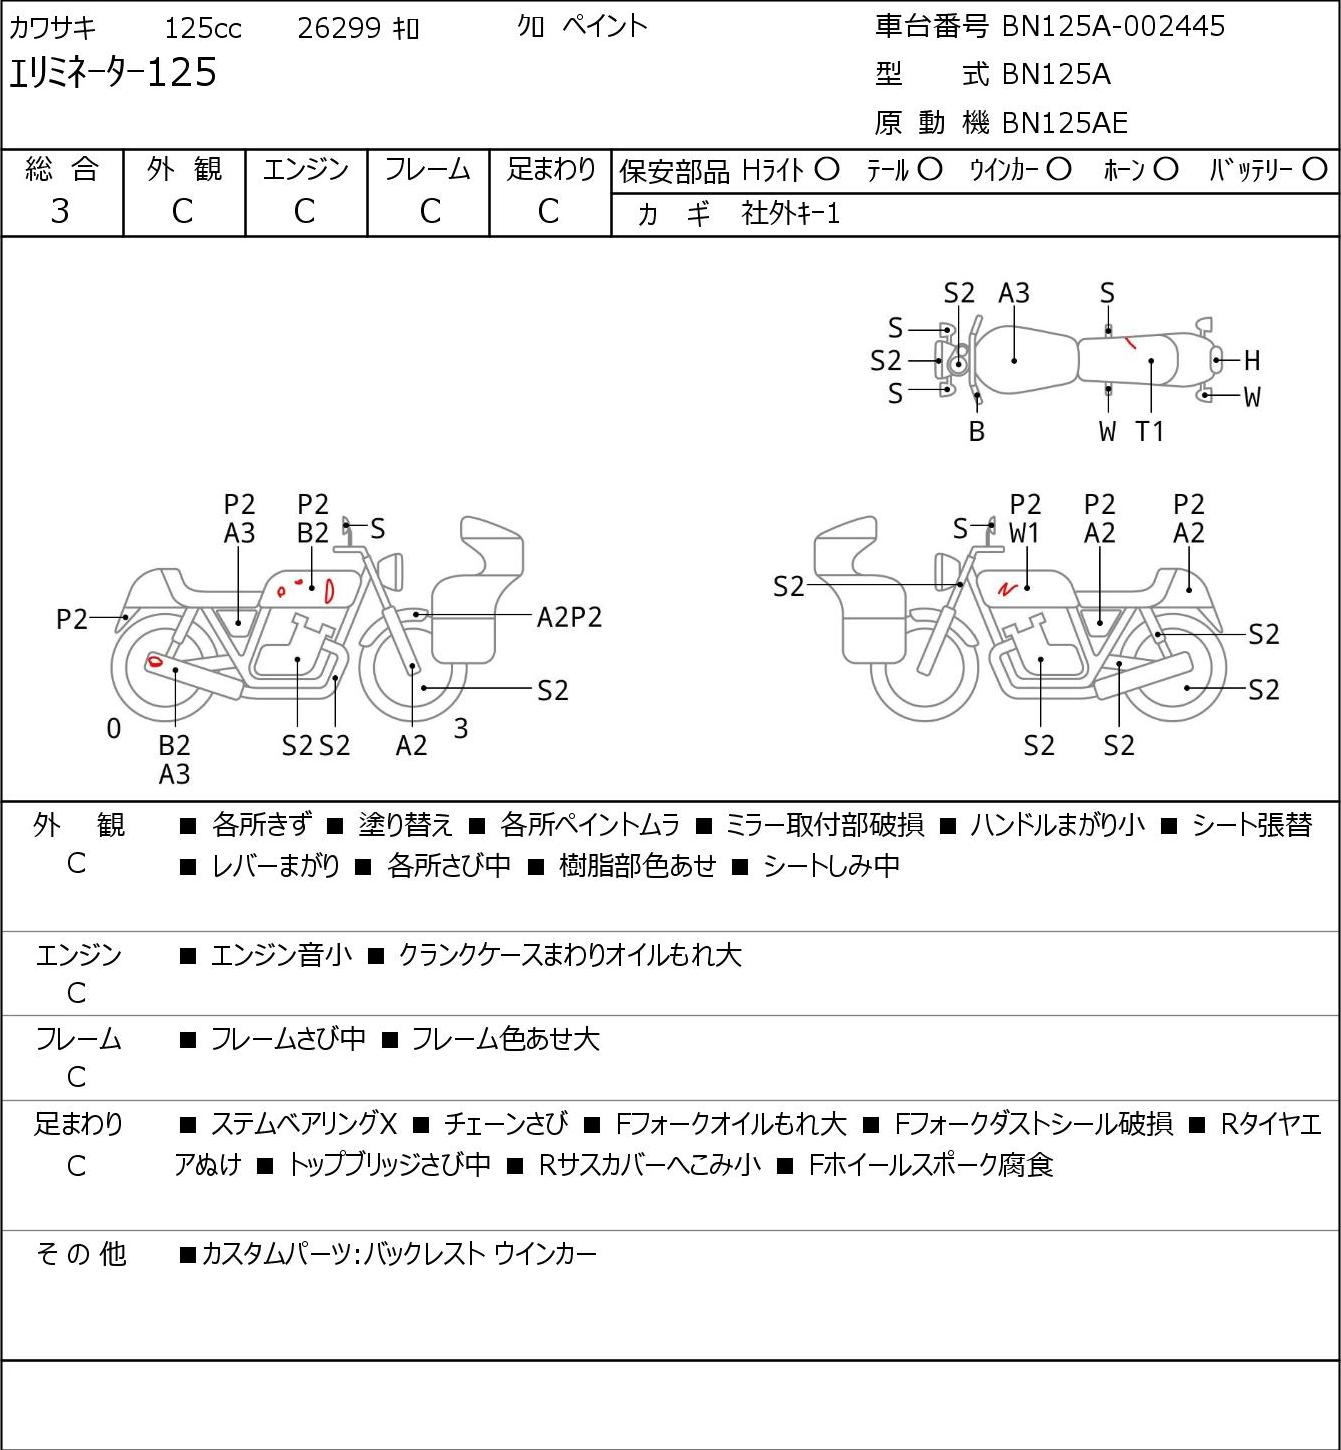 Kawasaki ELIMINATOR 125 BN125A г. 26299